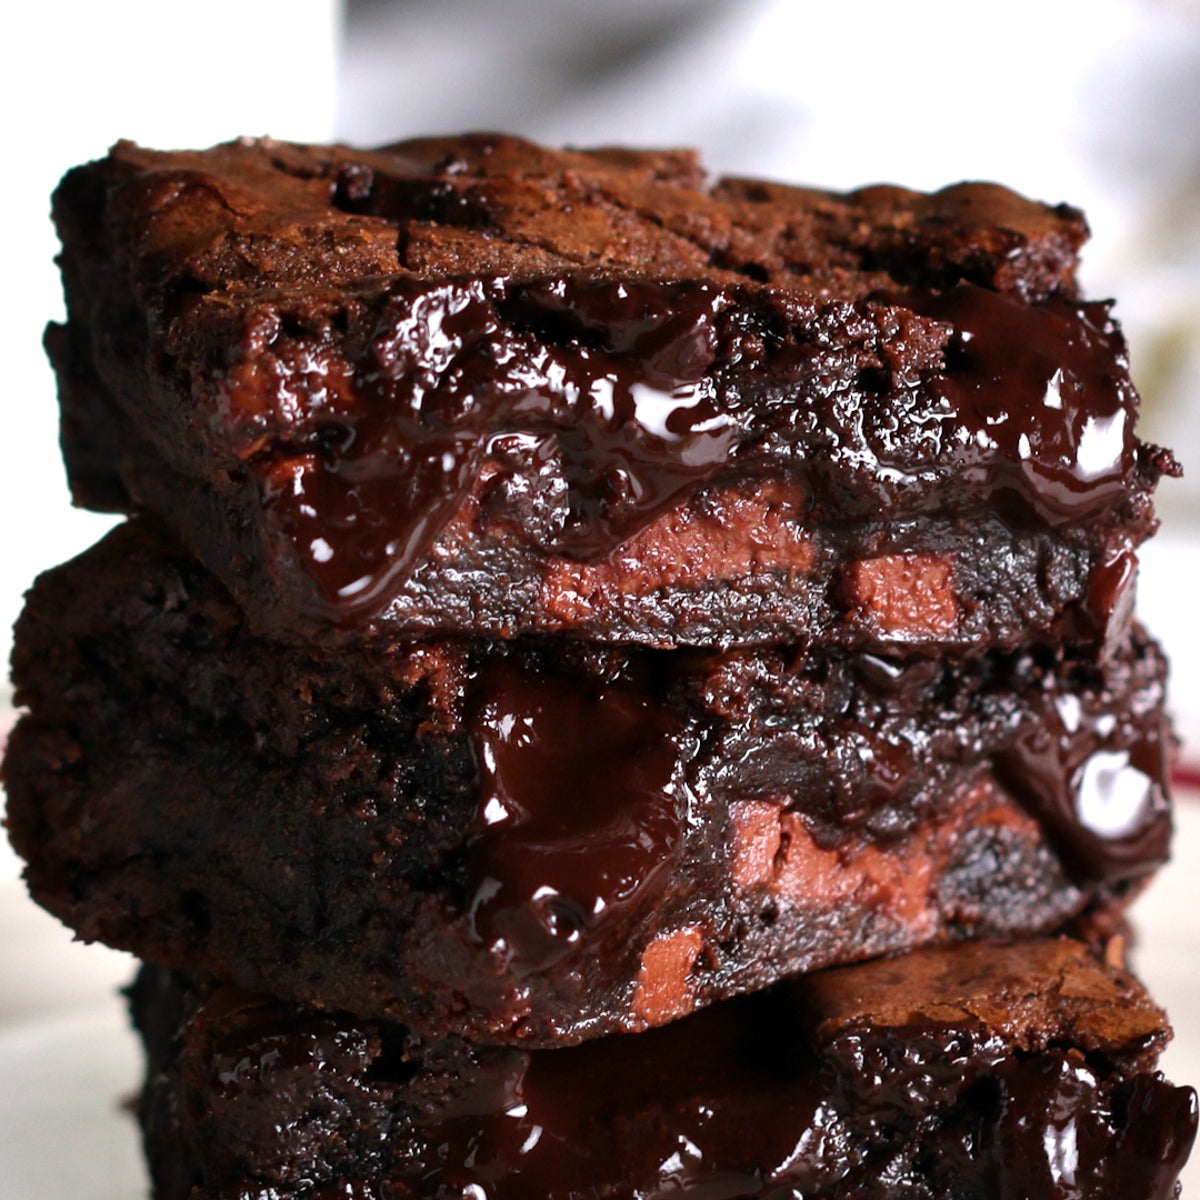 Ultimate gooey chocolate brownies recipe